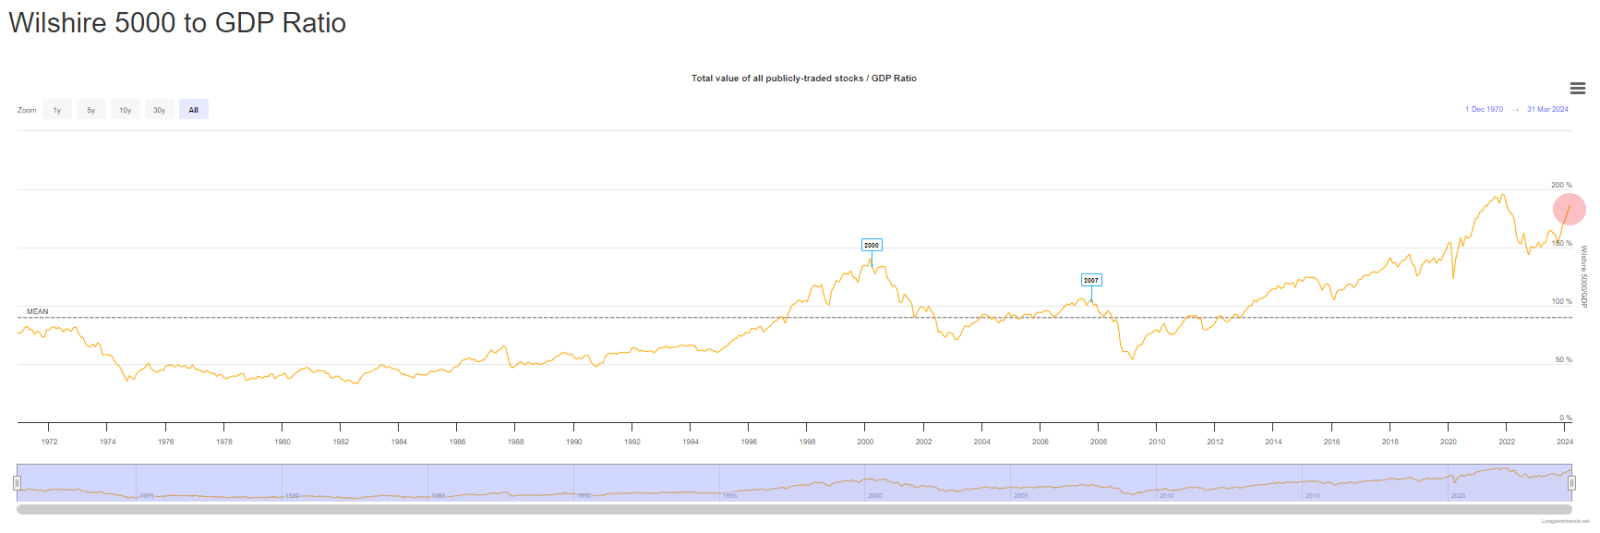 沃伦·巴菲特指标（所有公开交易股票的总价值/GDP比率）处于历史第二高水平，远高于互联网泡沫和全球金融危机时期。它唯一一次上涨是在2022年，当时的SPX在第二年下跌了19％。  $巴菲特持仓 (LIST2999.US)$$伯克希尔-A (BRK.A.US)$$伯克希尔-B (BRK.B.US)$$标普500指数 (....